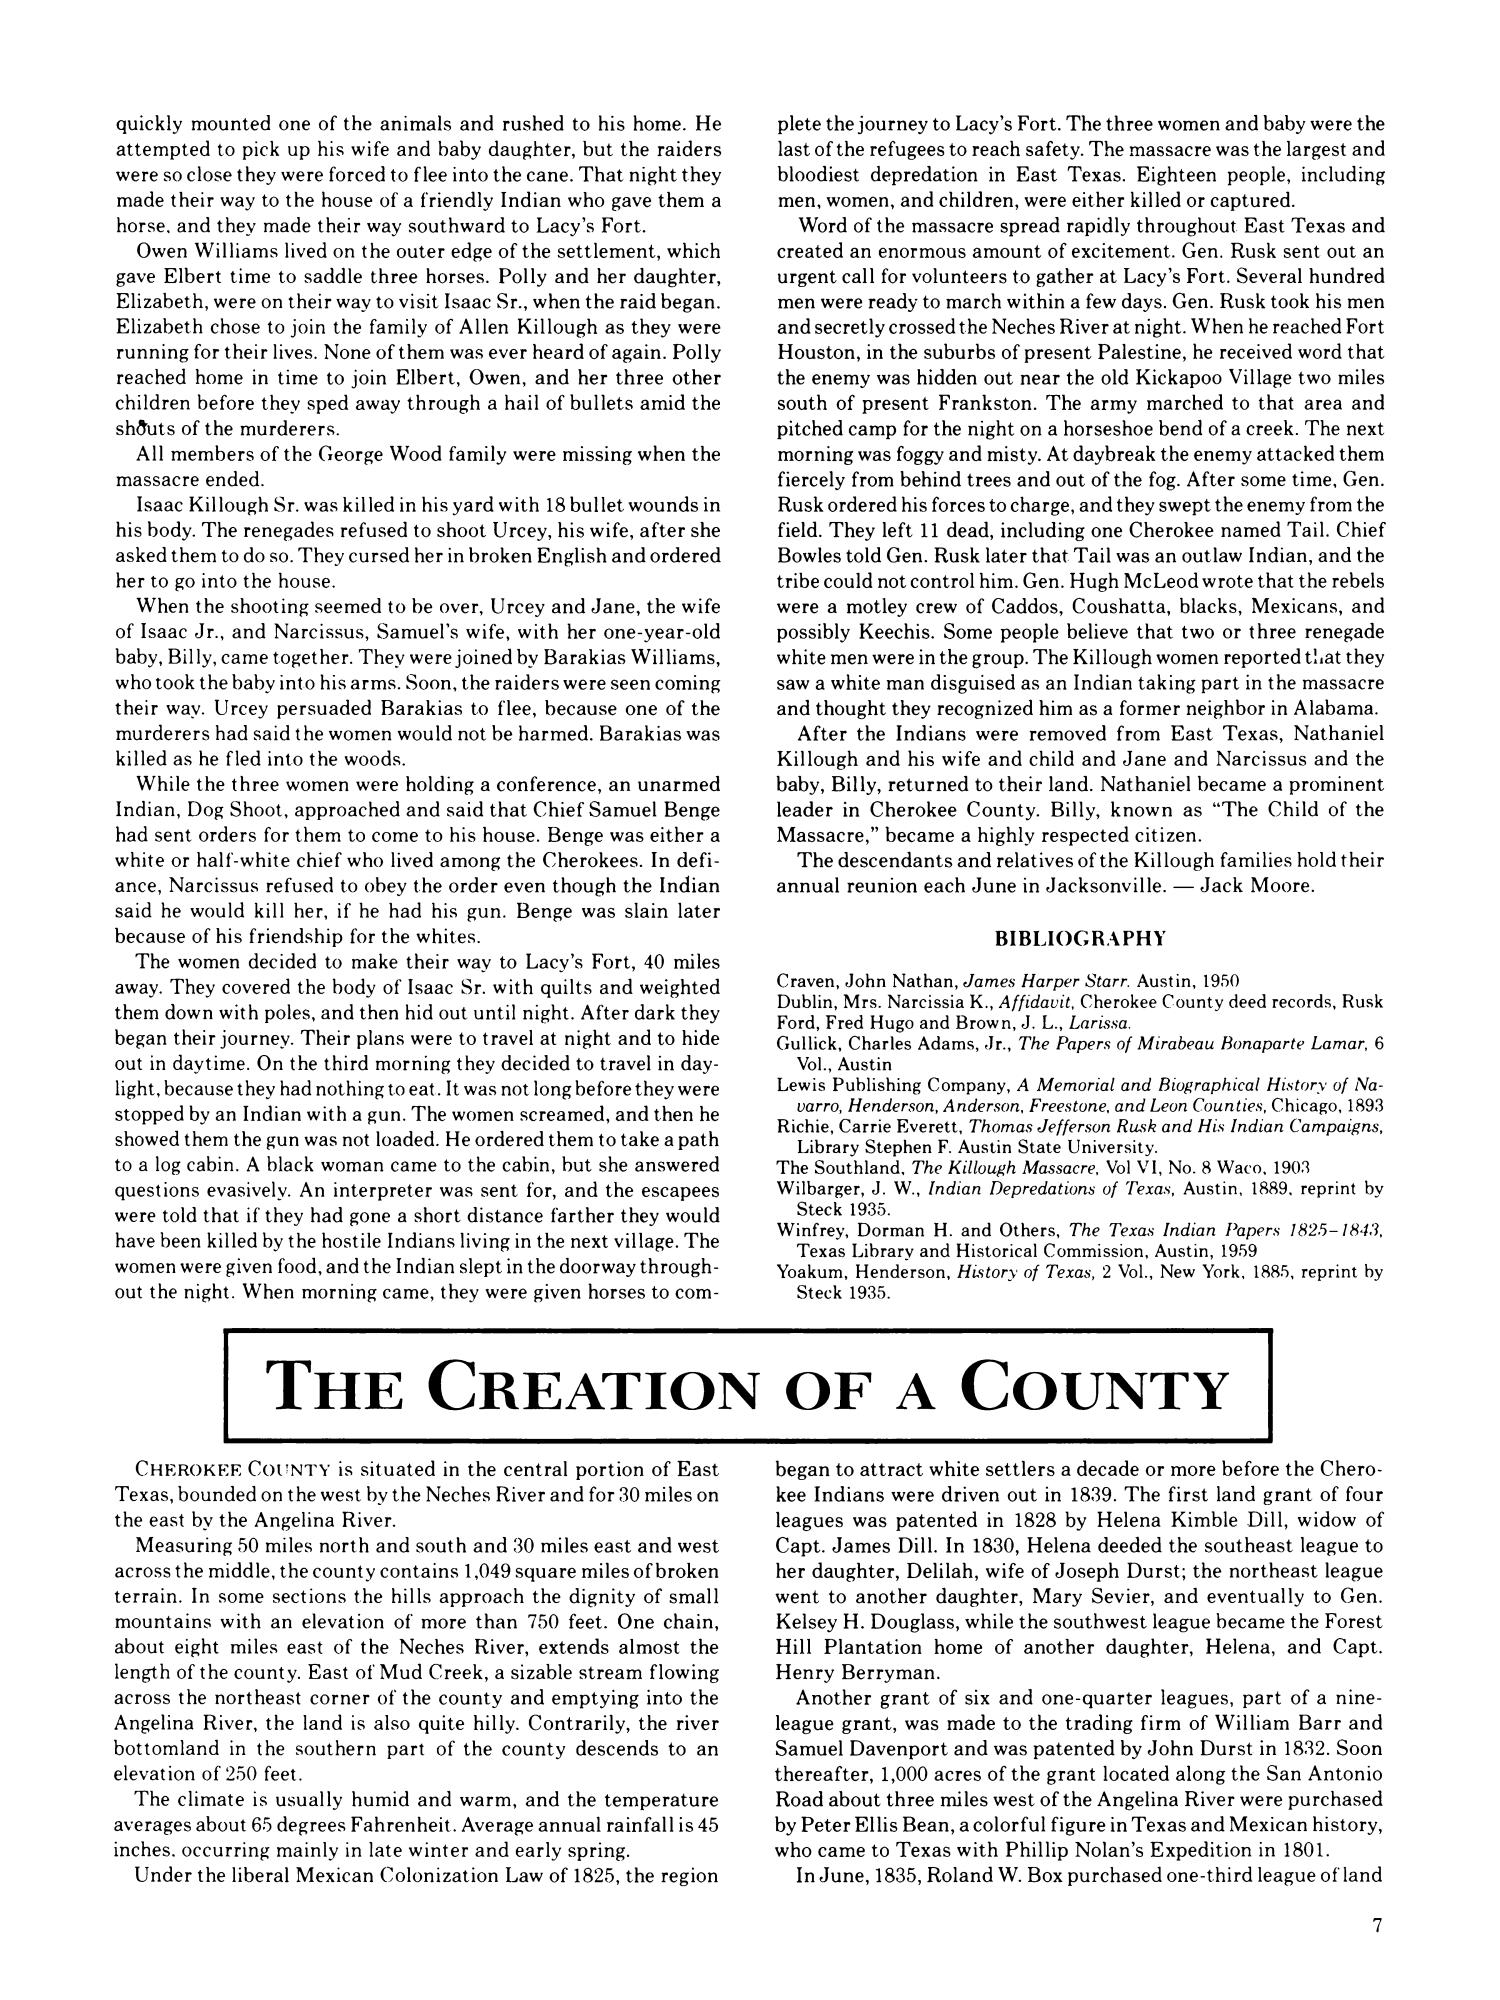 Cherokee County History
                                                
                                                    7
                                                